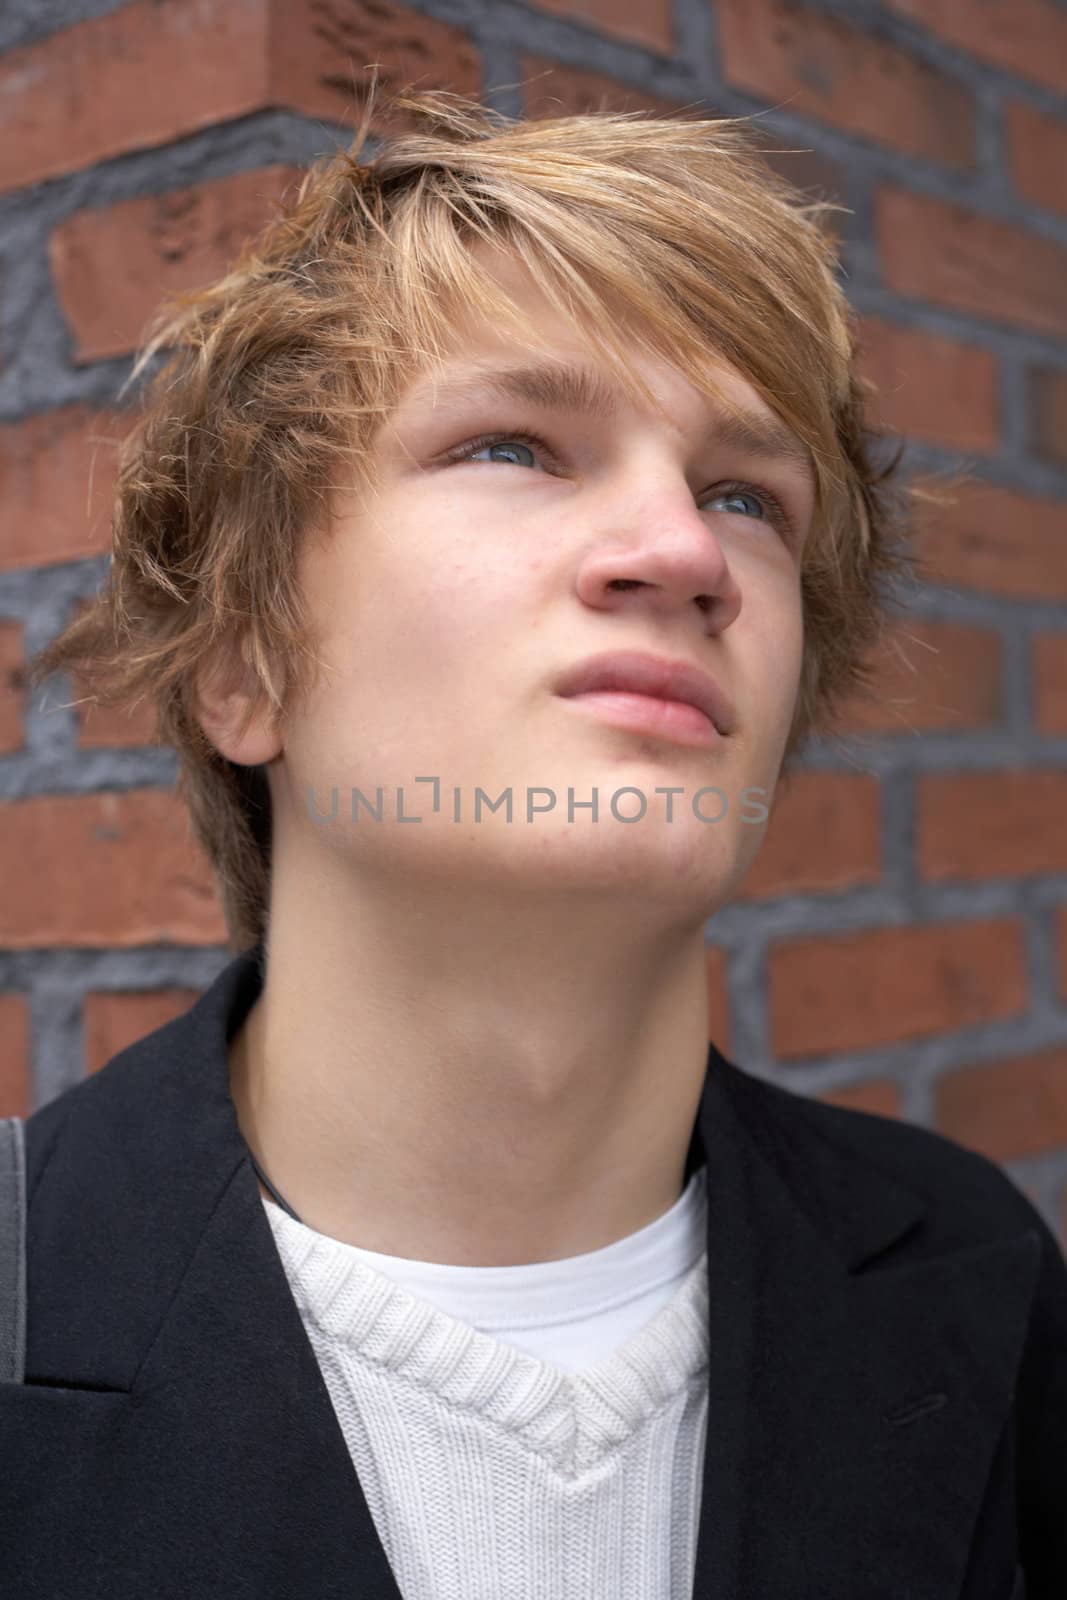 Pensive teenage boy by brick wall, looking away